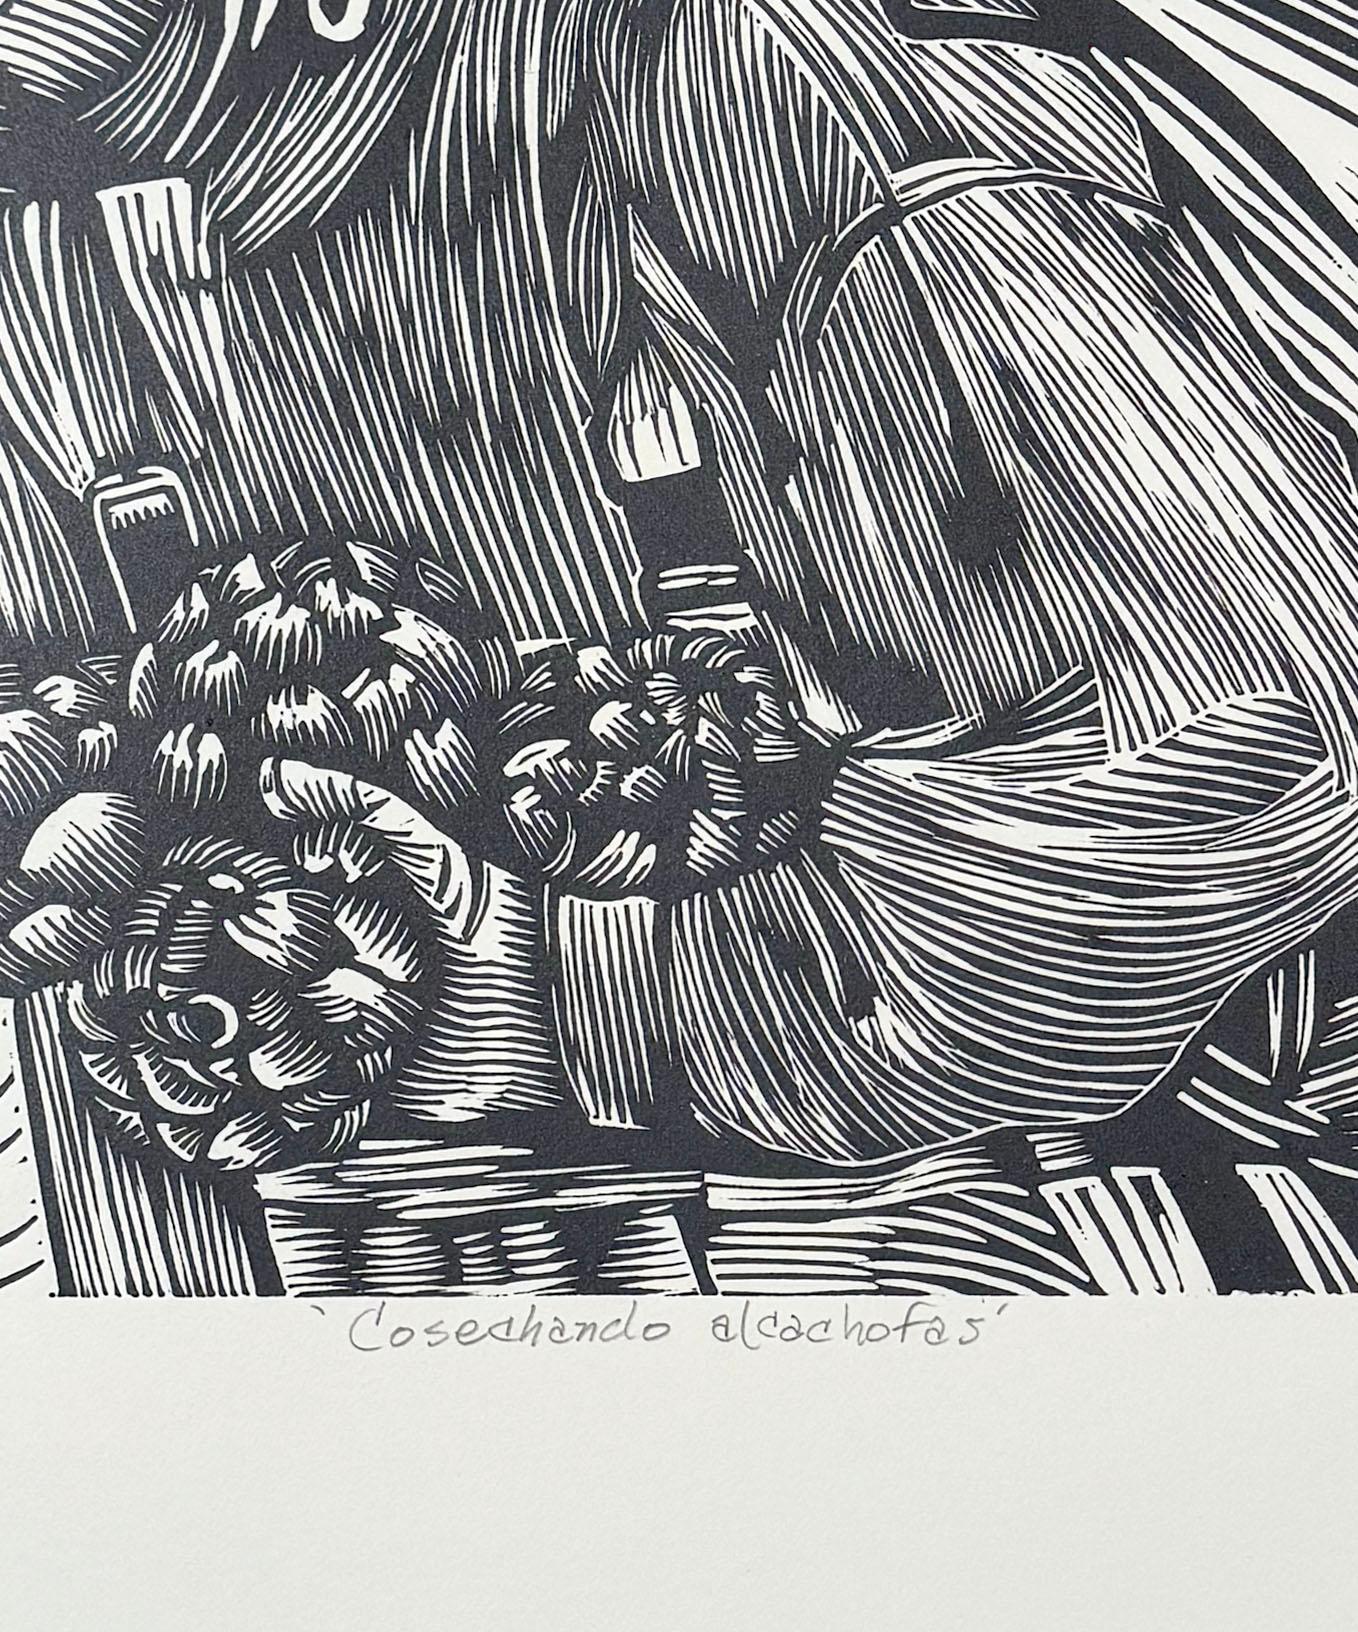 Cosechando Alcachofas (harvesting artichokes), by Juan Fuentes For Sale 3